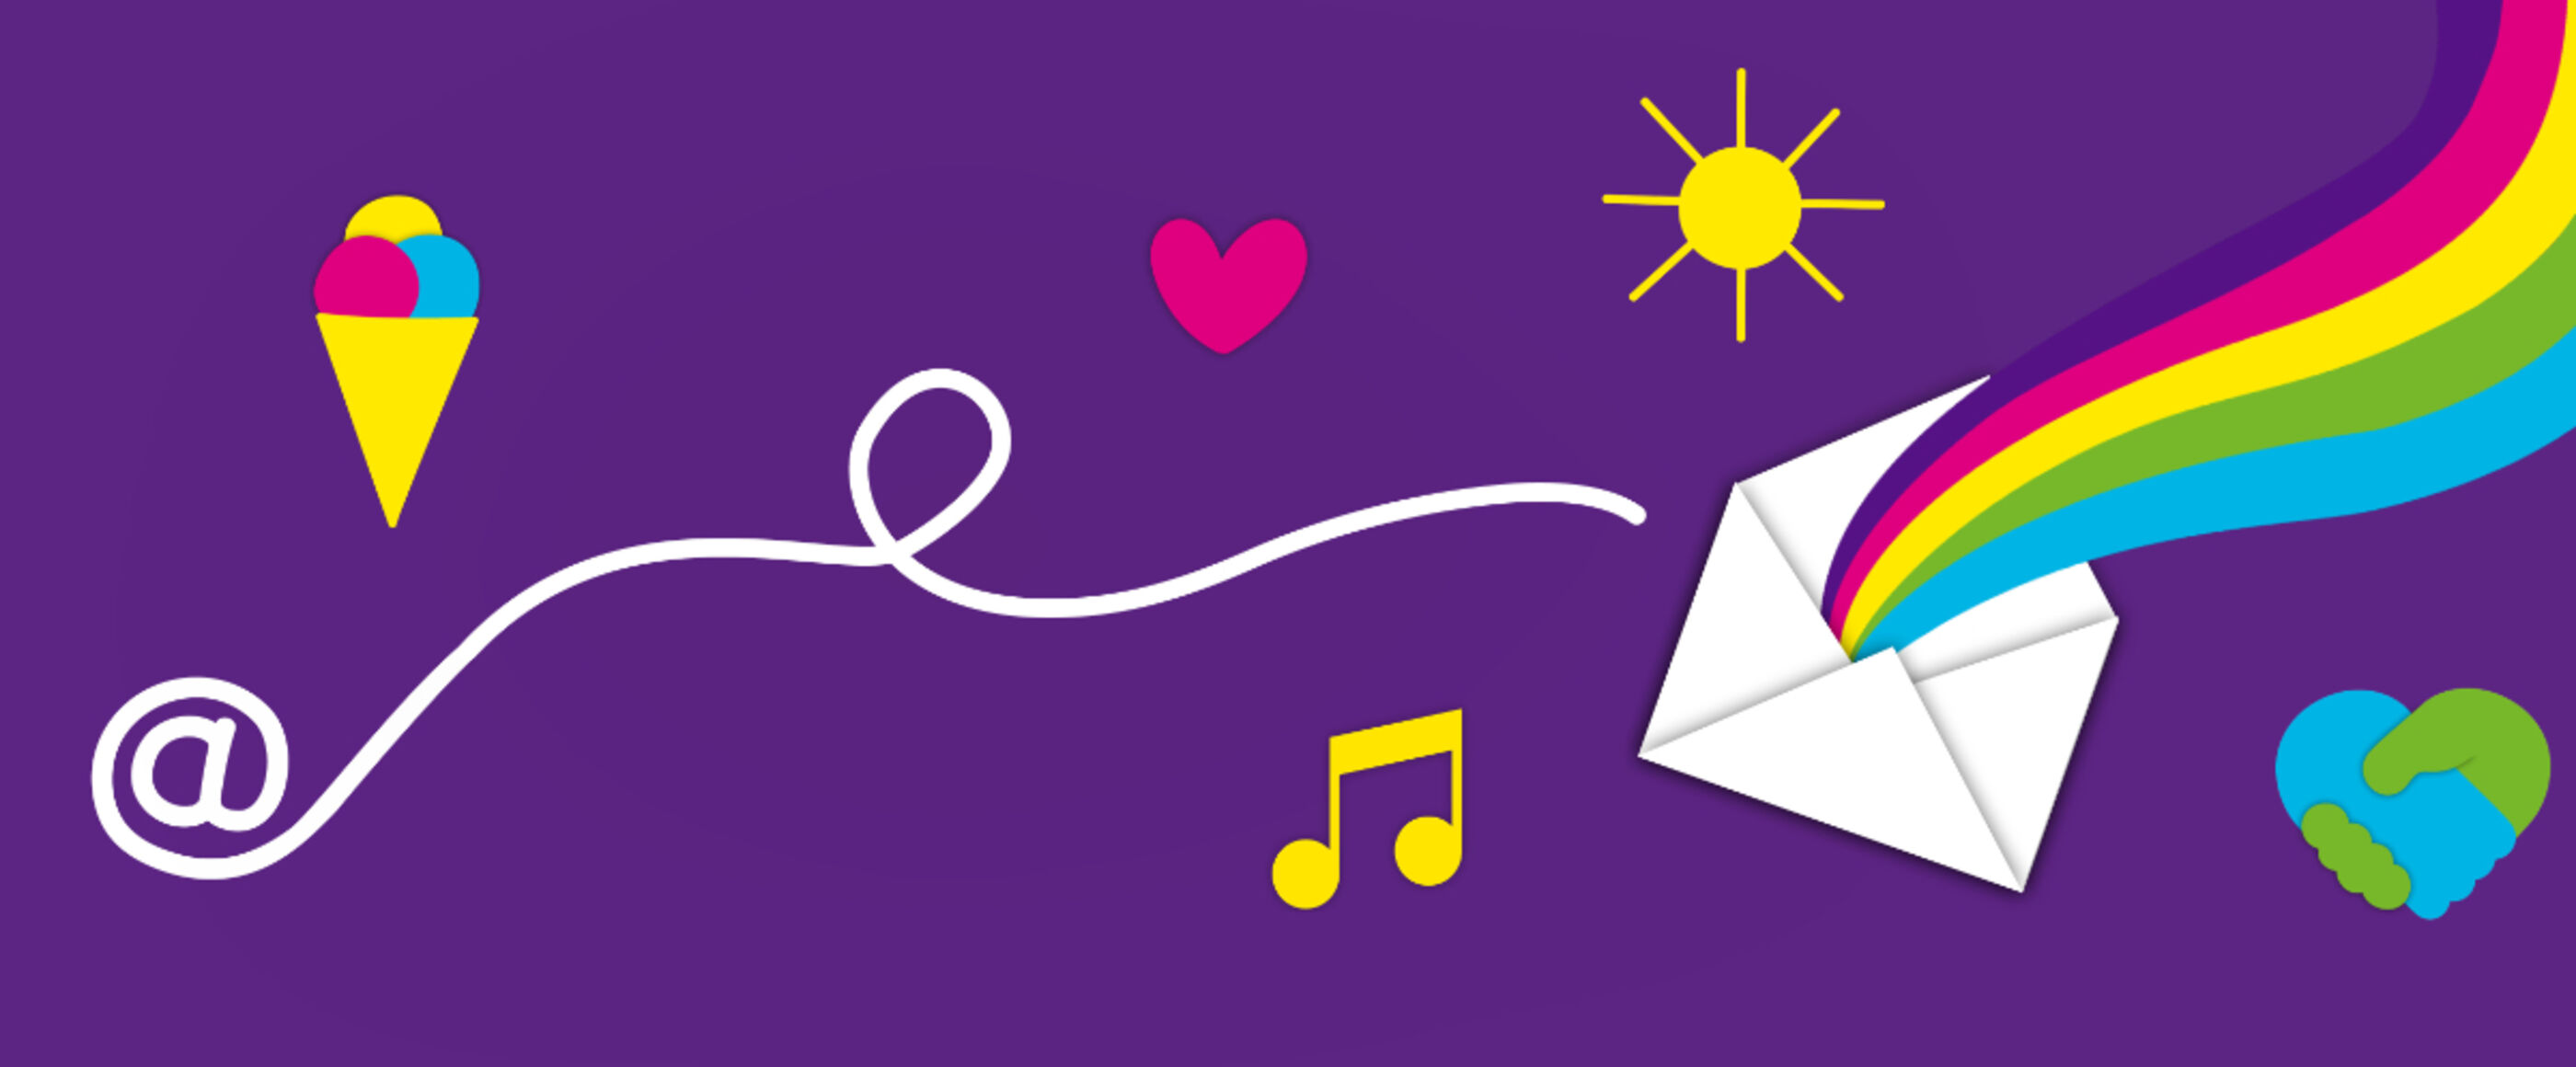 ein Briefumschlag mit vielen Symbolen darum wie einem Eis, Musiknoten, einem Herz und einer Sonne